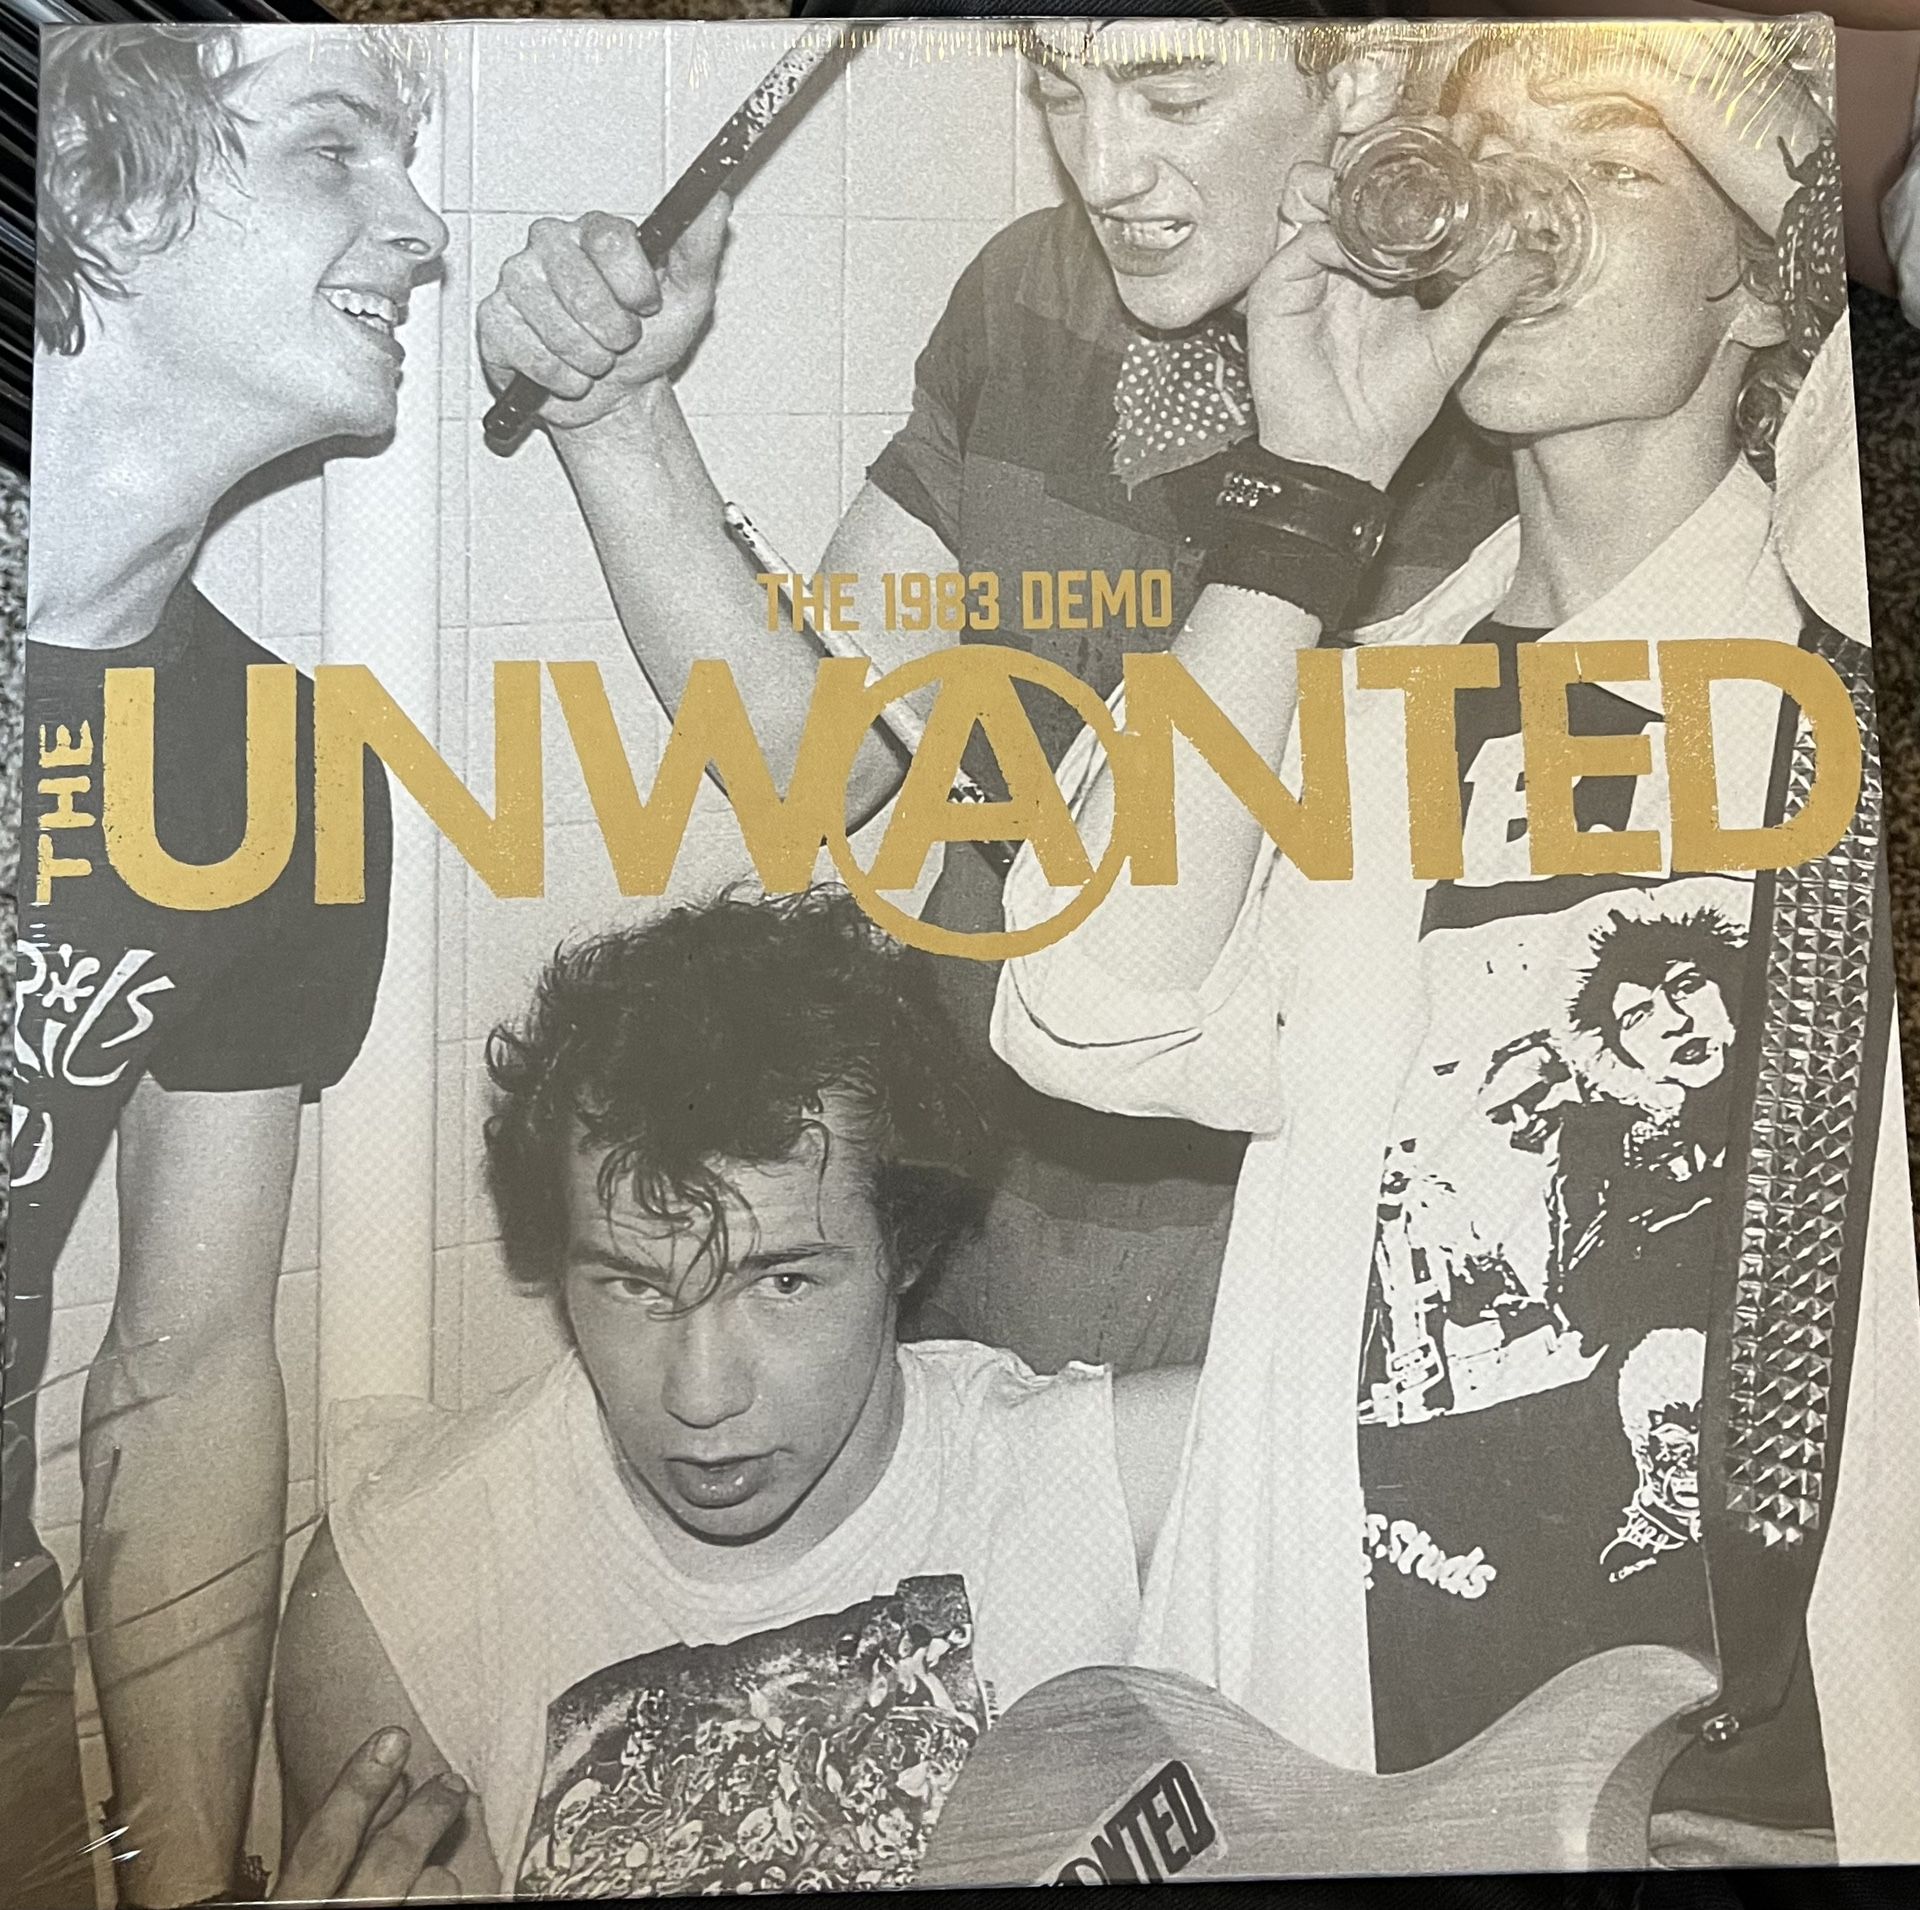 The Unwanted - 1983 Demo Vinyl LP